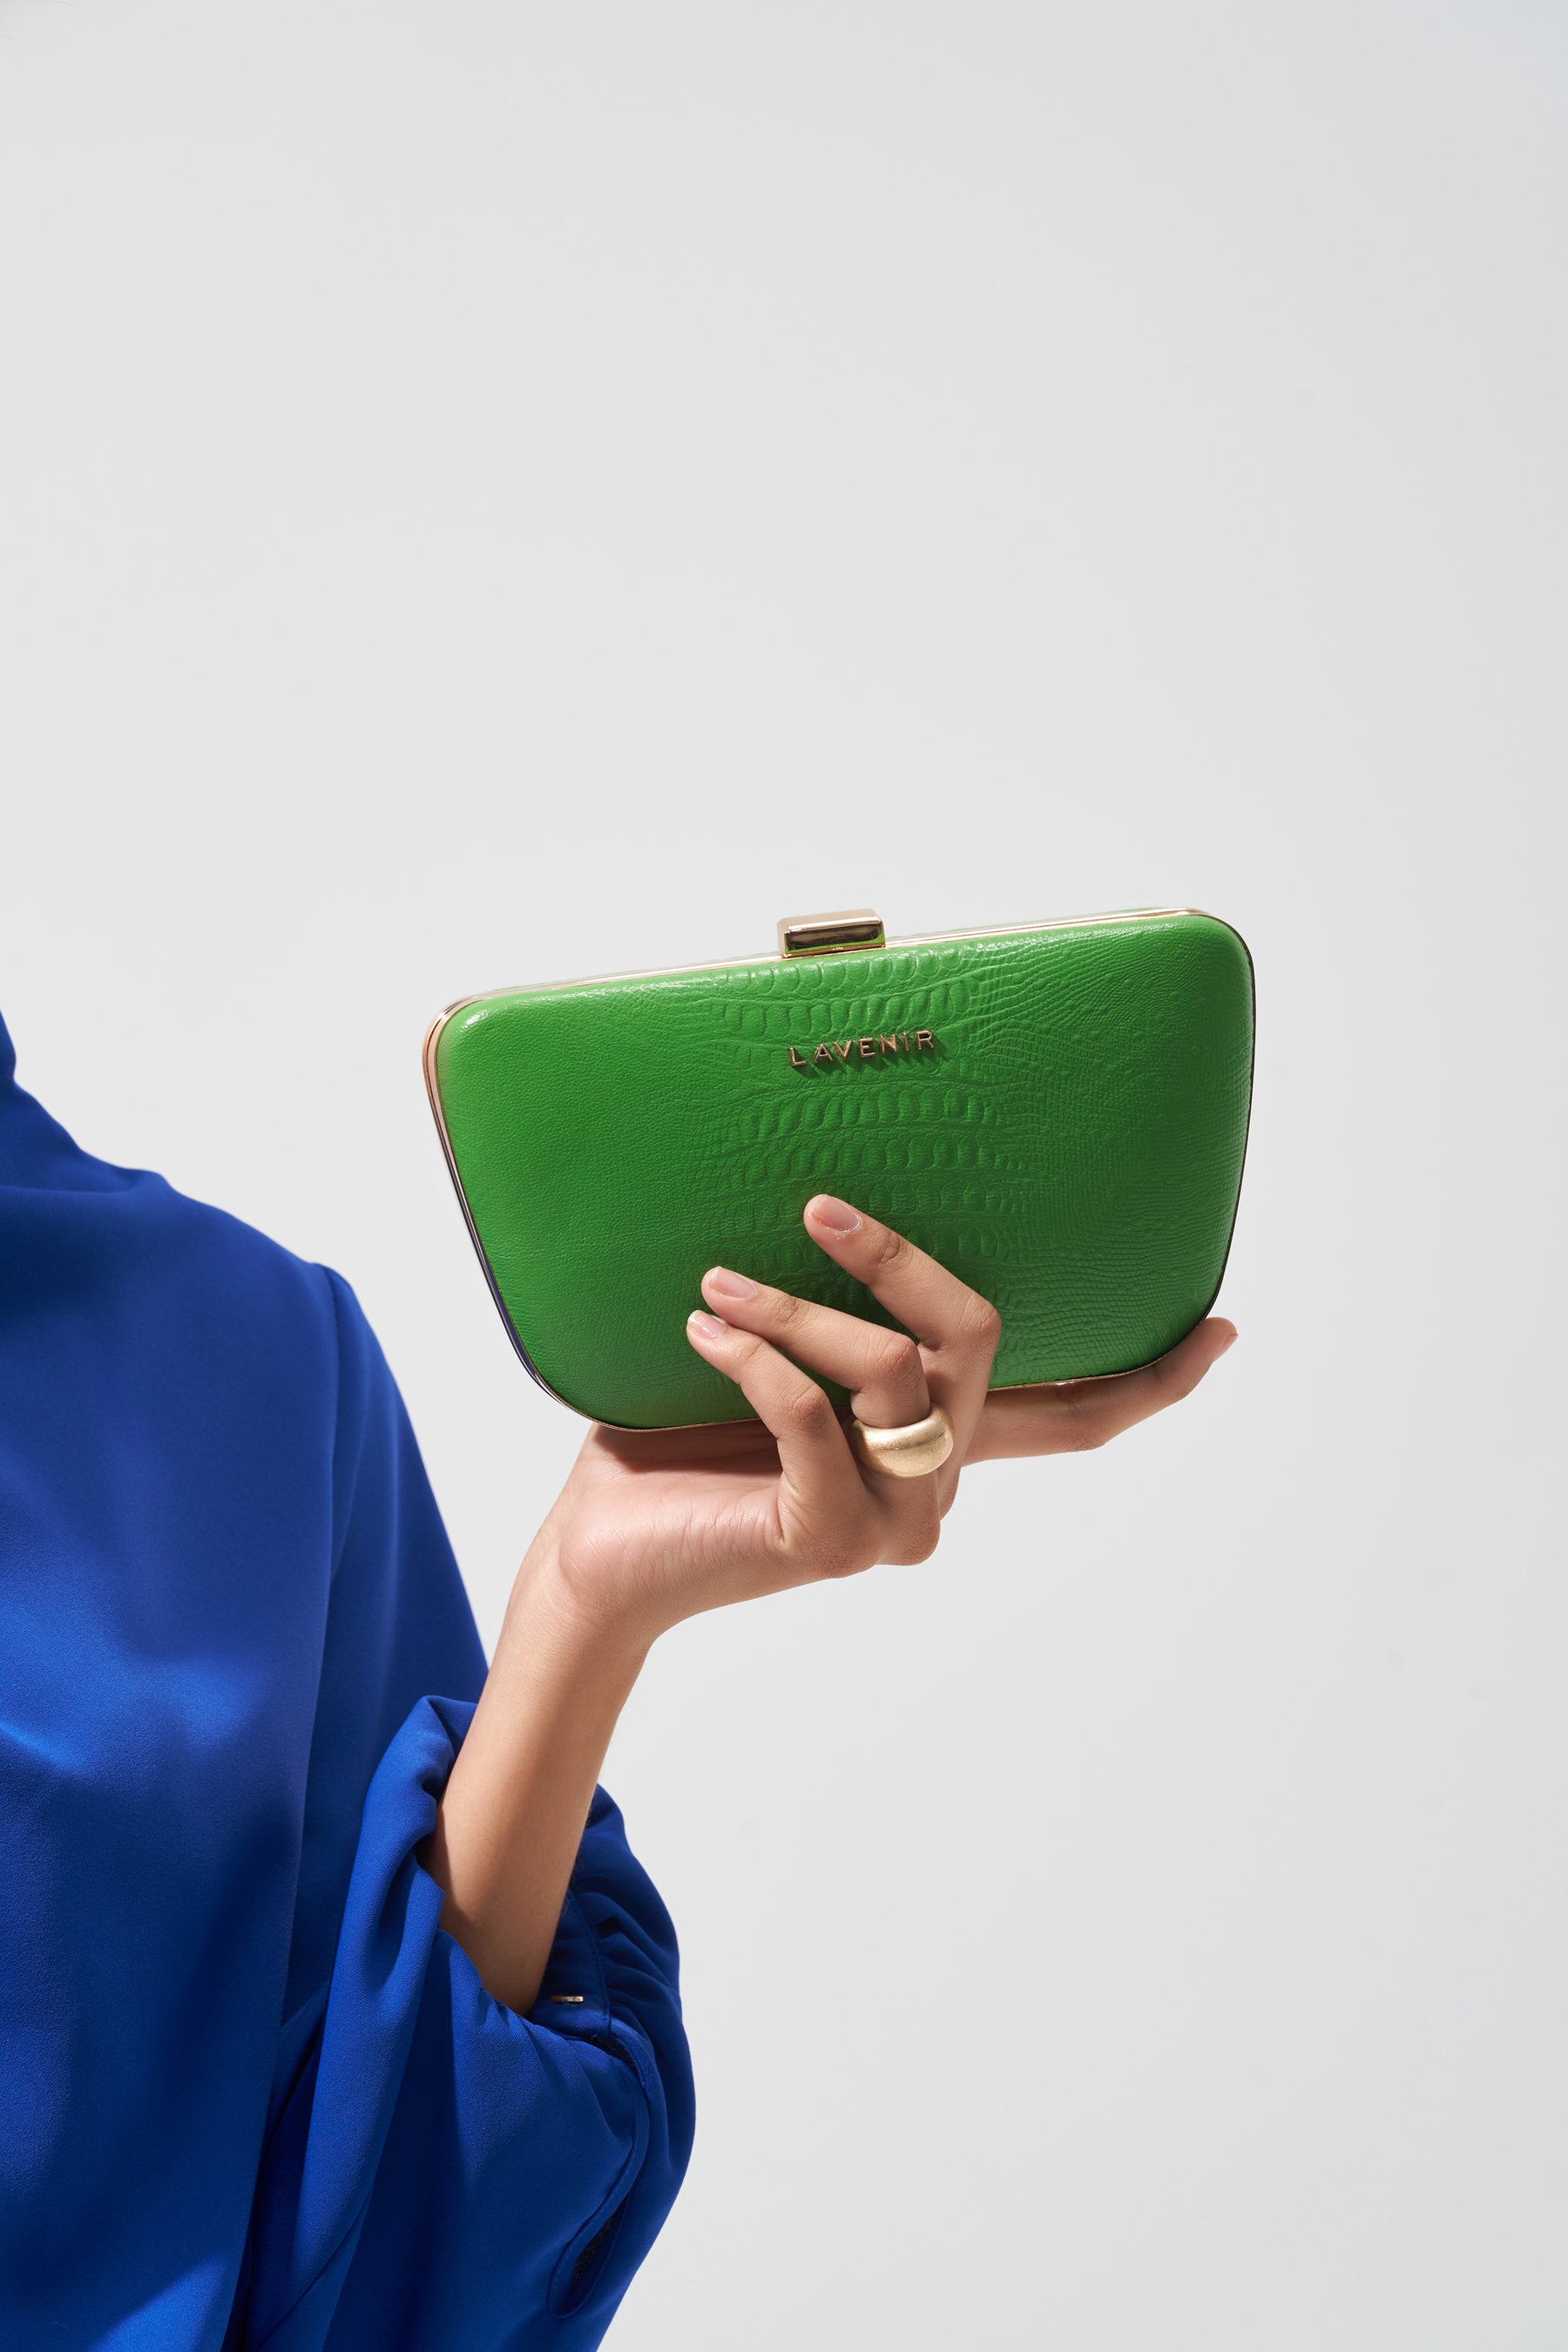 Camila - Leather Box Clutch Bag - Croco Lawn Green